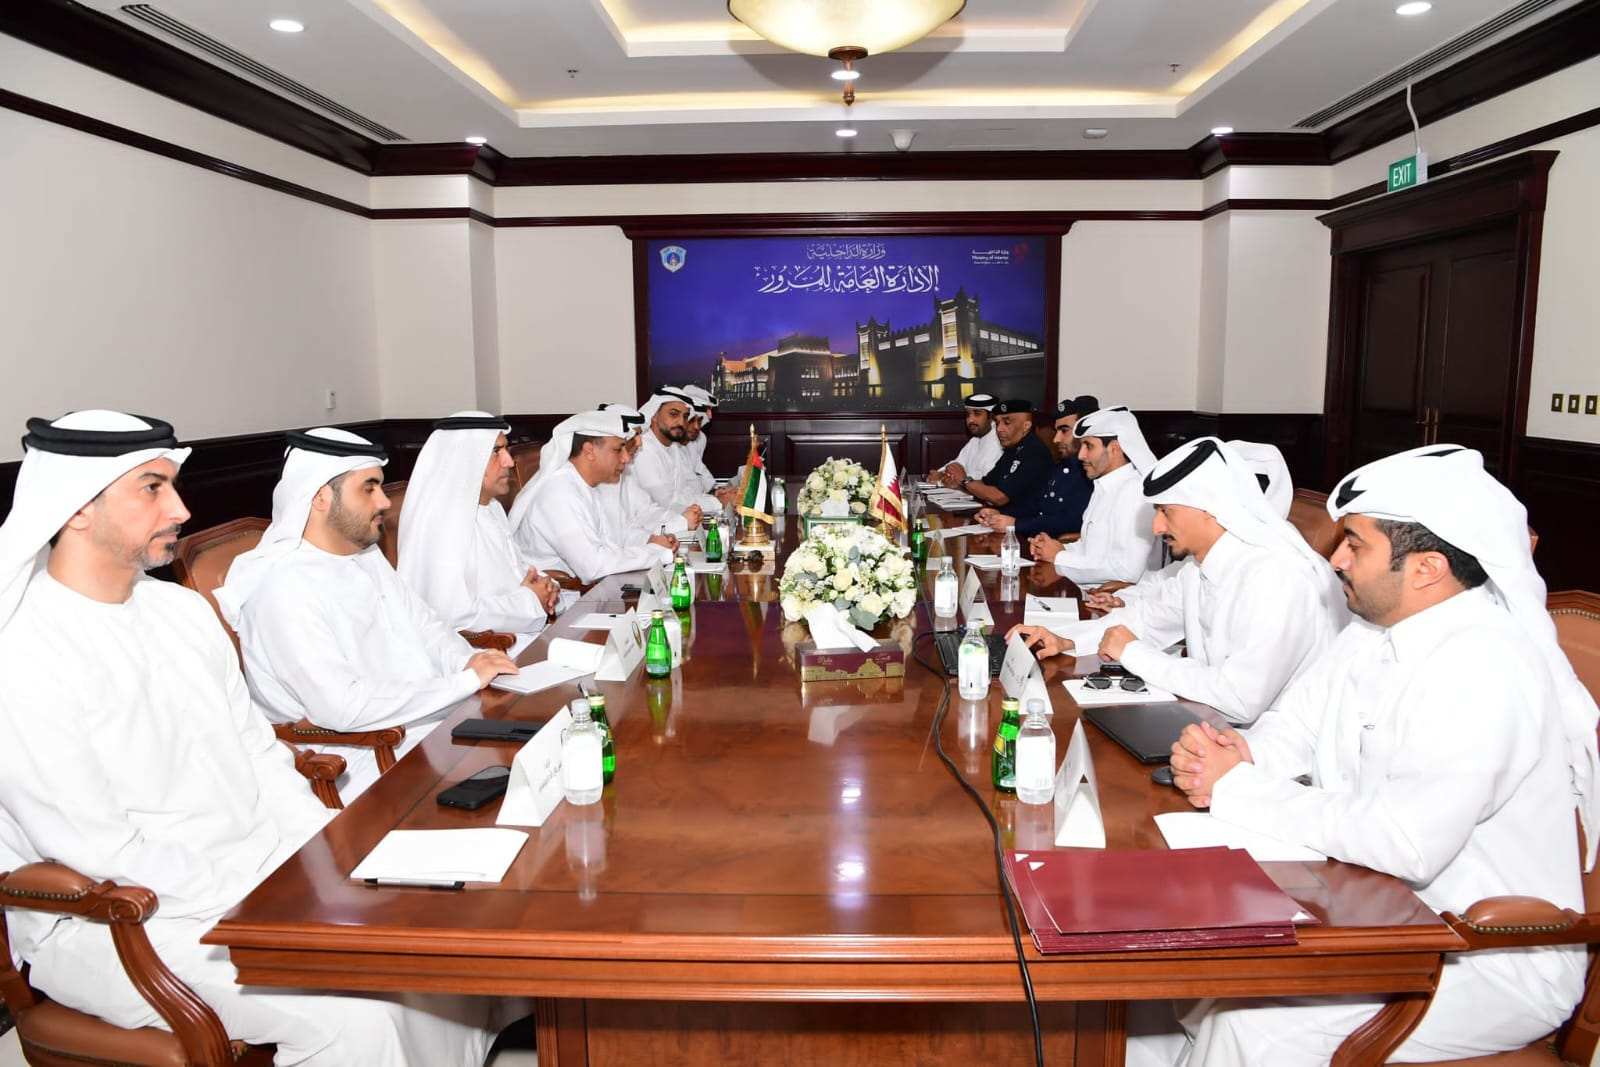 اجتماع الفرق الفنية المشتركة بين الإمارات و قطر تعزيزاً للعمل المشترك